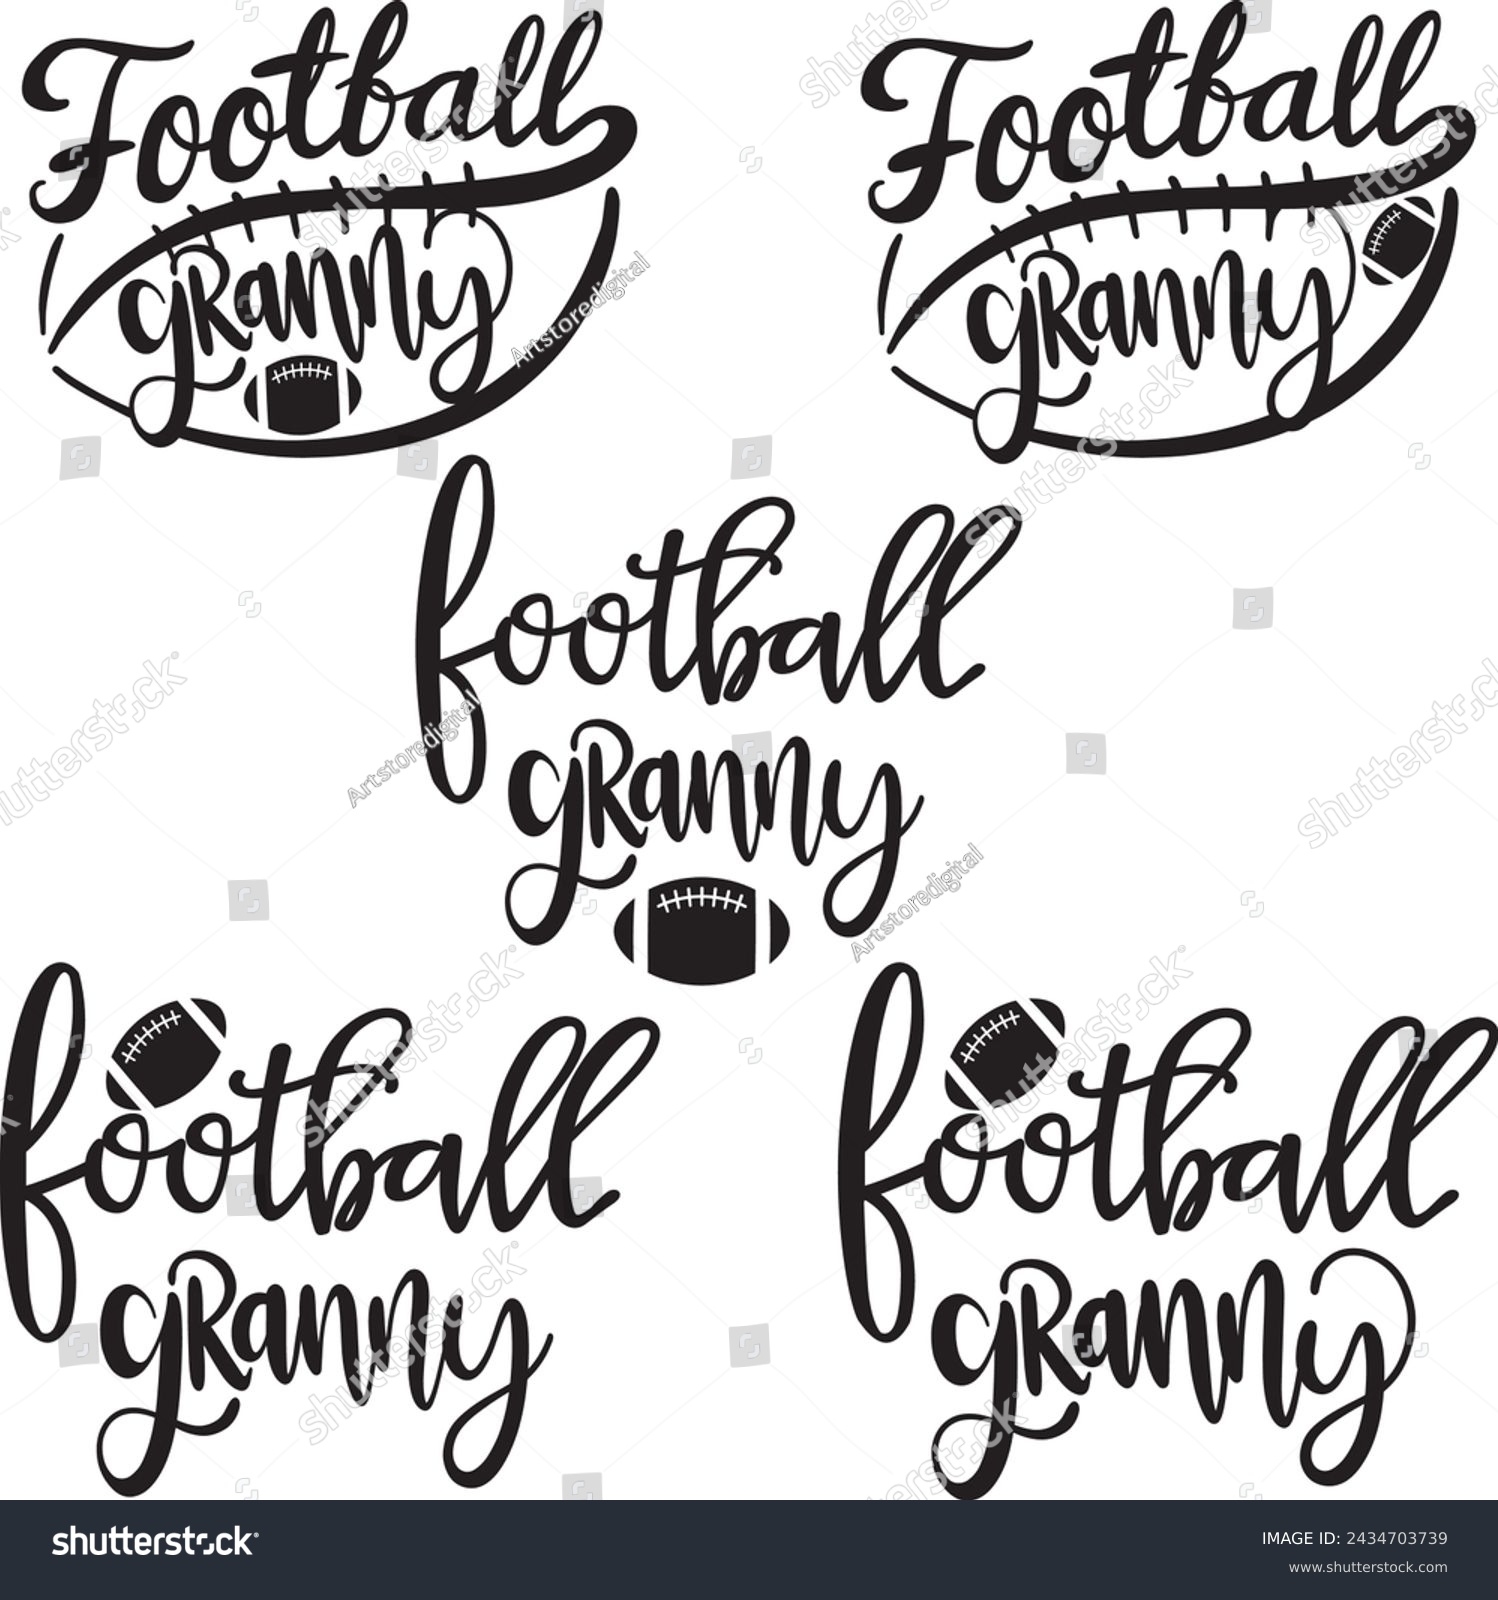 SVG of Football Granny, american football, football love, football family vector illustration file svg